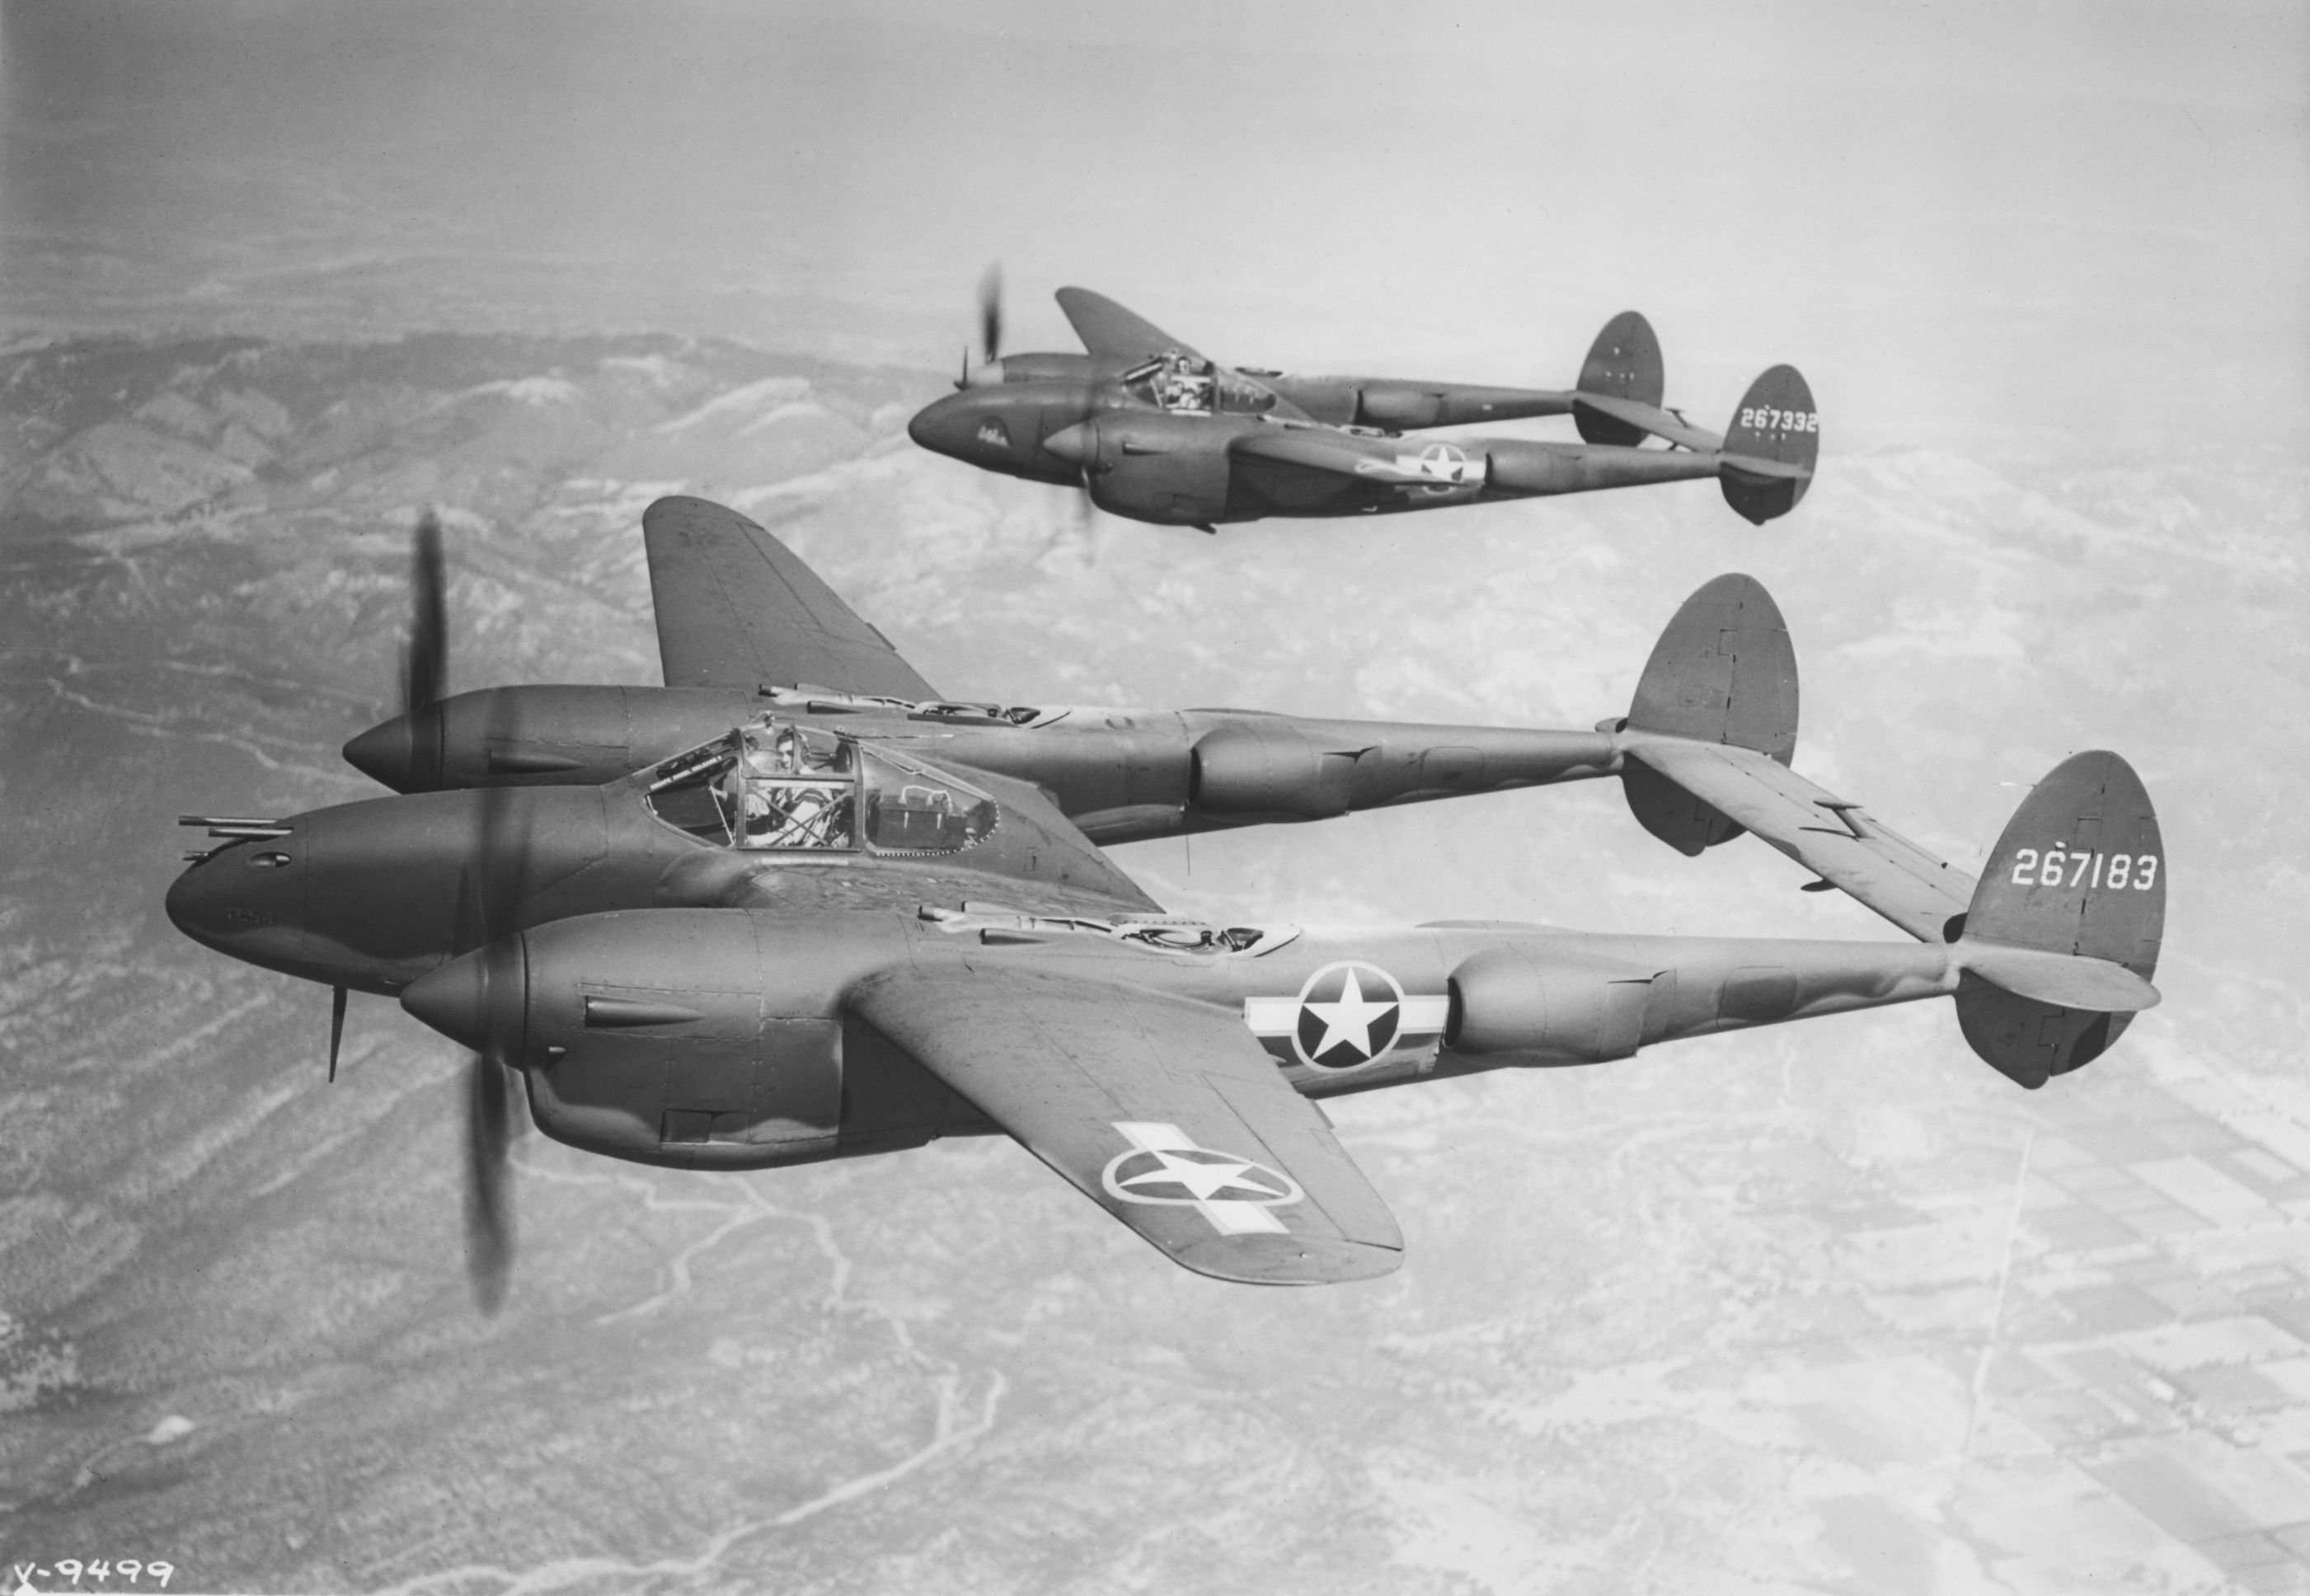 Истребители советских времен. П-38 Лайтнинг. P-38 Lightning. P38 второй мировой войны. Локхид p-38 «Лайтнинг» f-5b-1-lo.